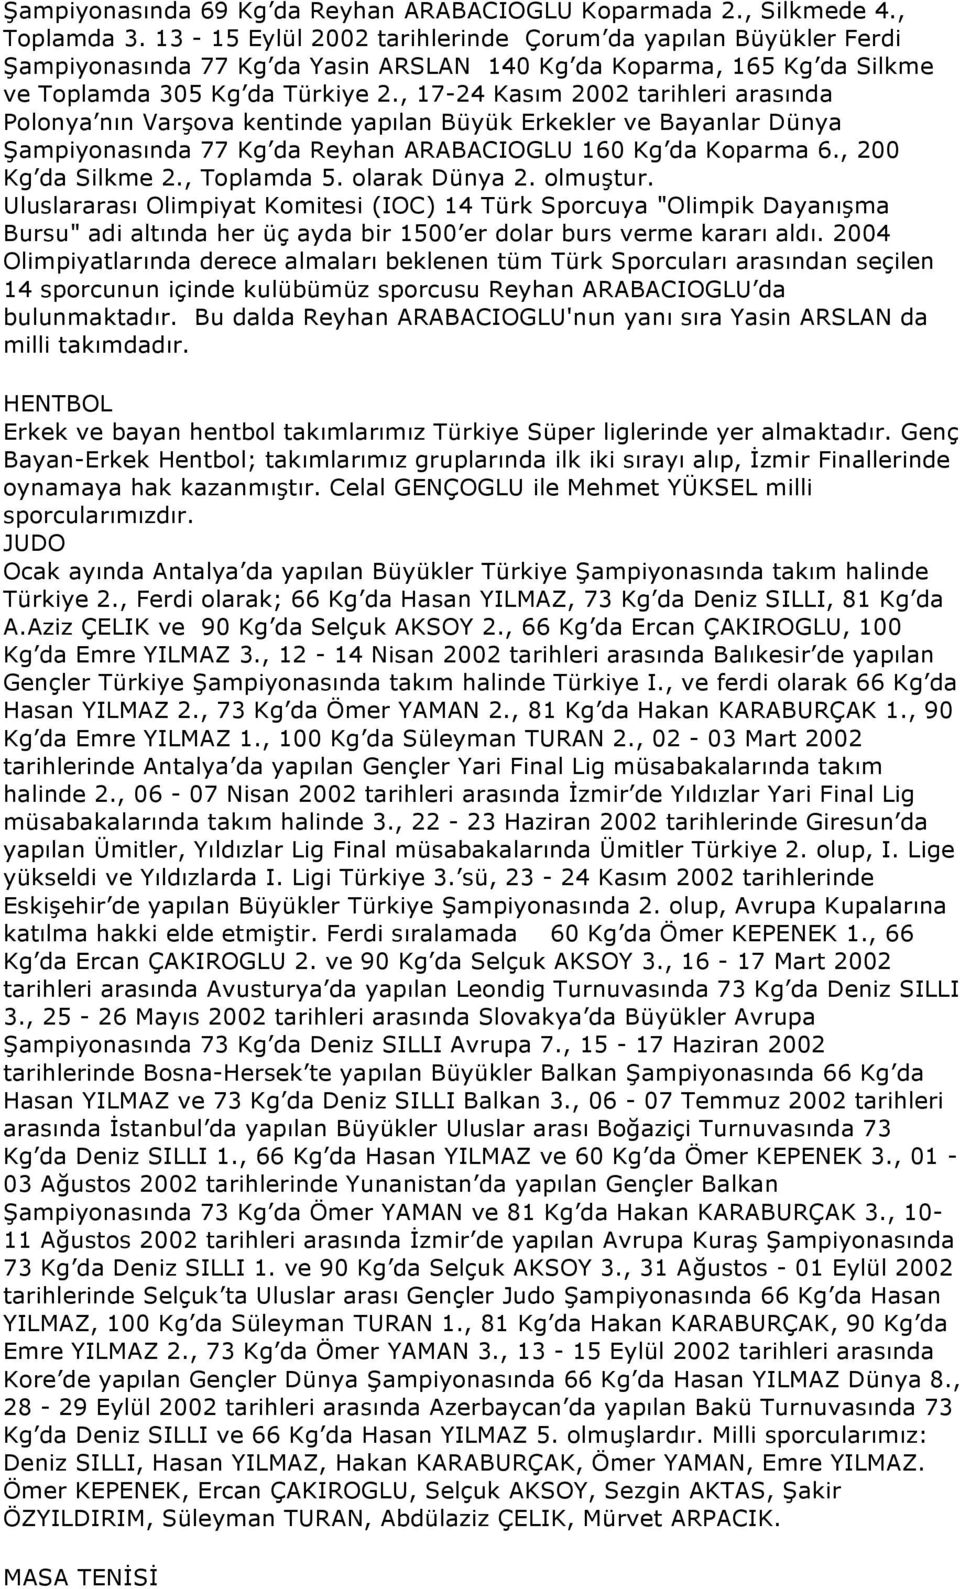 , 17-24 Kasım 2002 tarihleri arasında Polonya nın Varşova kentinde yapılan Büyük Erkekler ve Bayanlar Dünya Şampiyonasında 77 Kg da Reyhan ARABACIOGLU 160 Kg da Koparma 6., 200 Kg da Silkme 2.